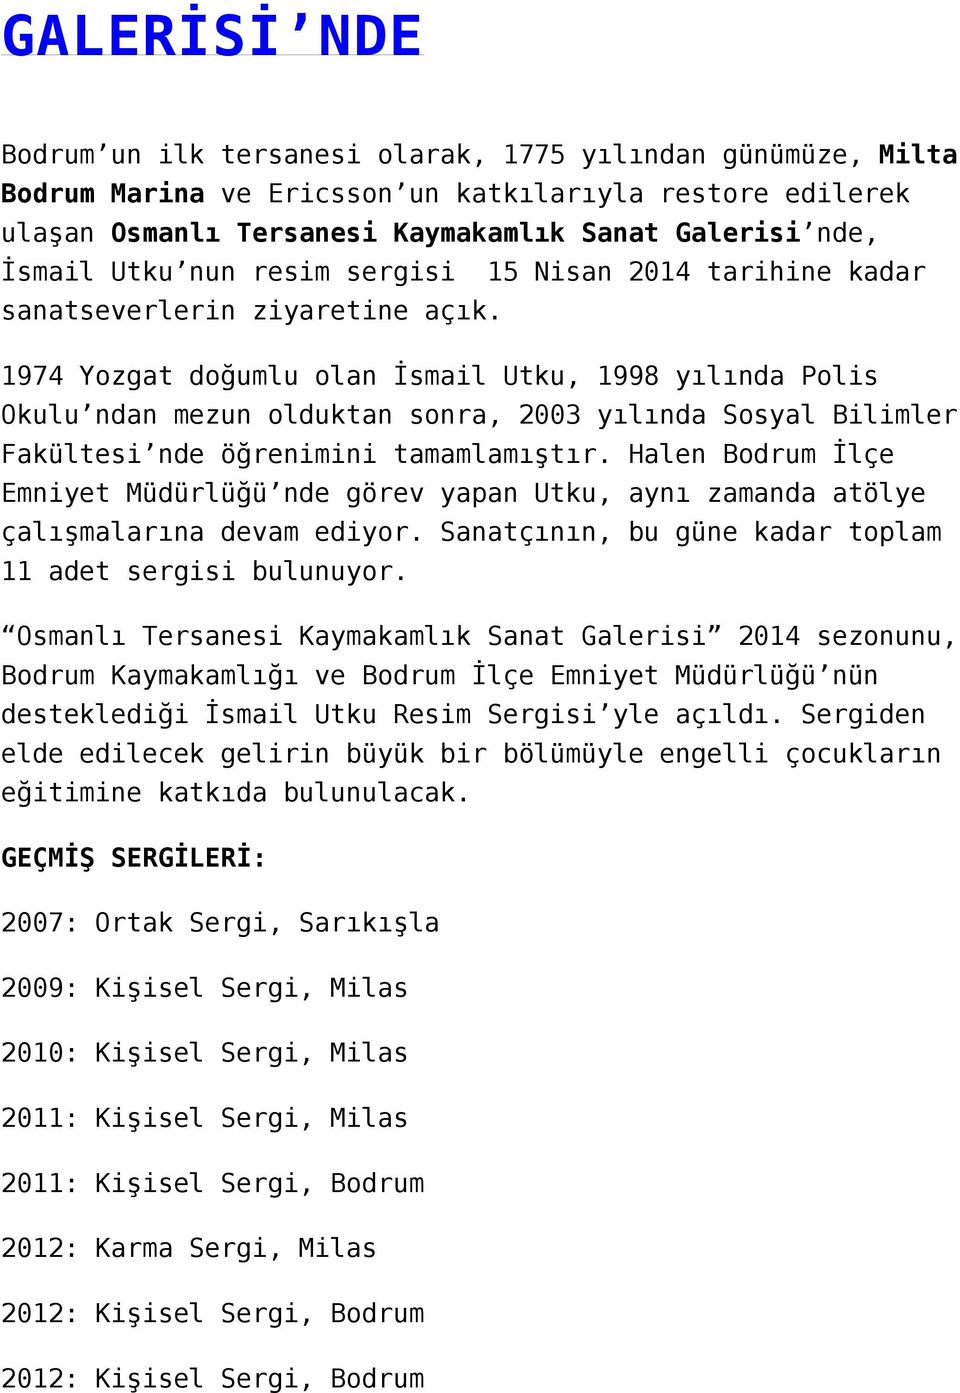 1974 Yozgat doğumlu olan İsmail Utku, 1998 yılında Polis Okulu ndan mezun olduktan sonra, 2003 yılında Sosyal Bilimler Fakültesi nde öğrenimini tamamlamıştır.